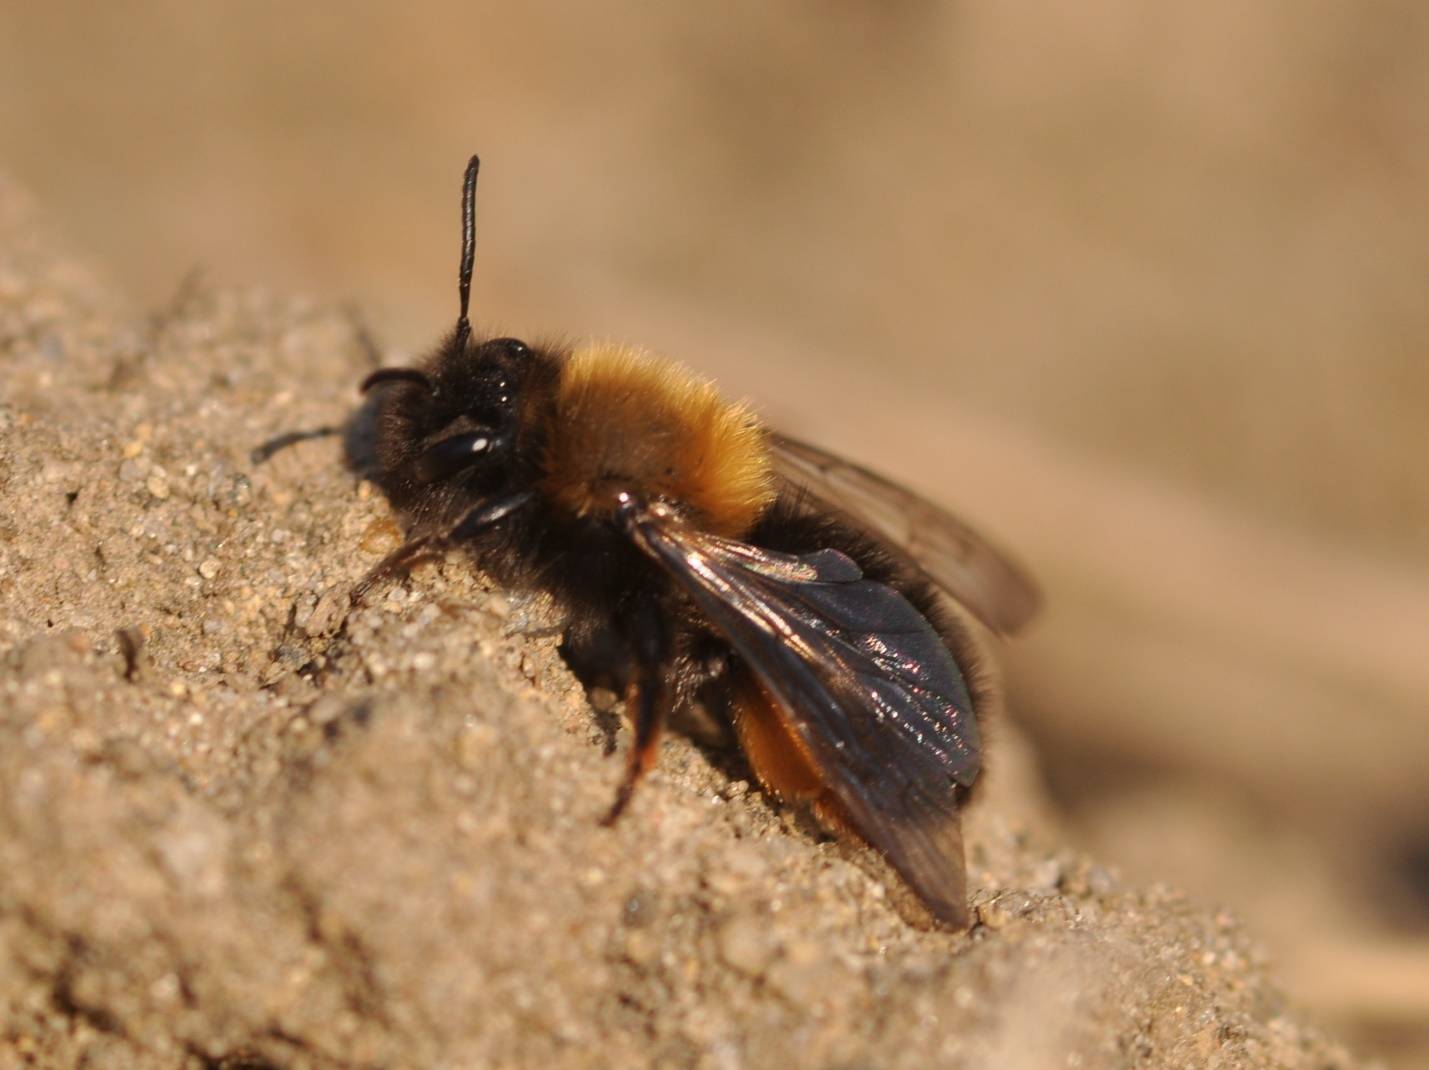 Дикие пчелы: описание, где живут и как избавиться, достоинства и недостатки